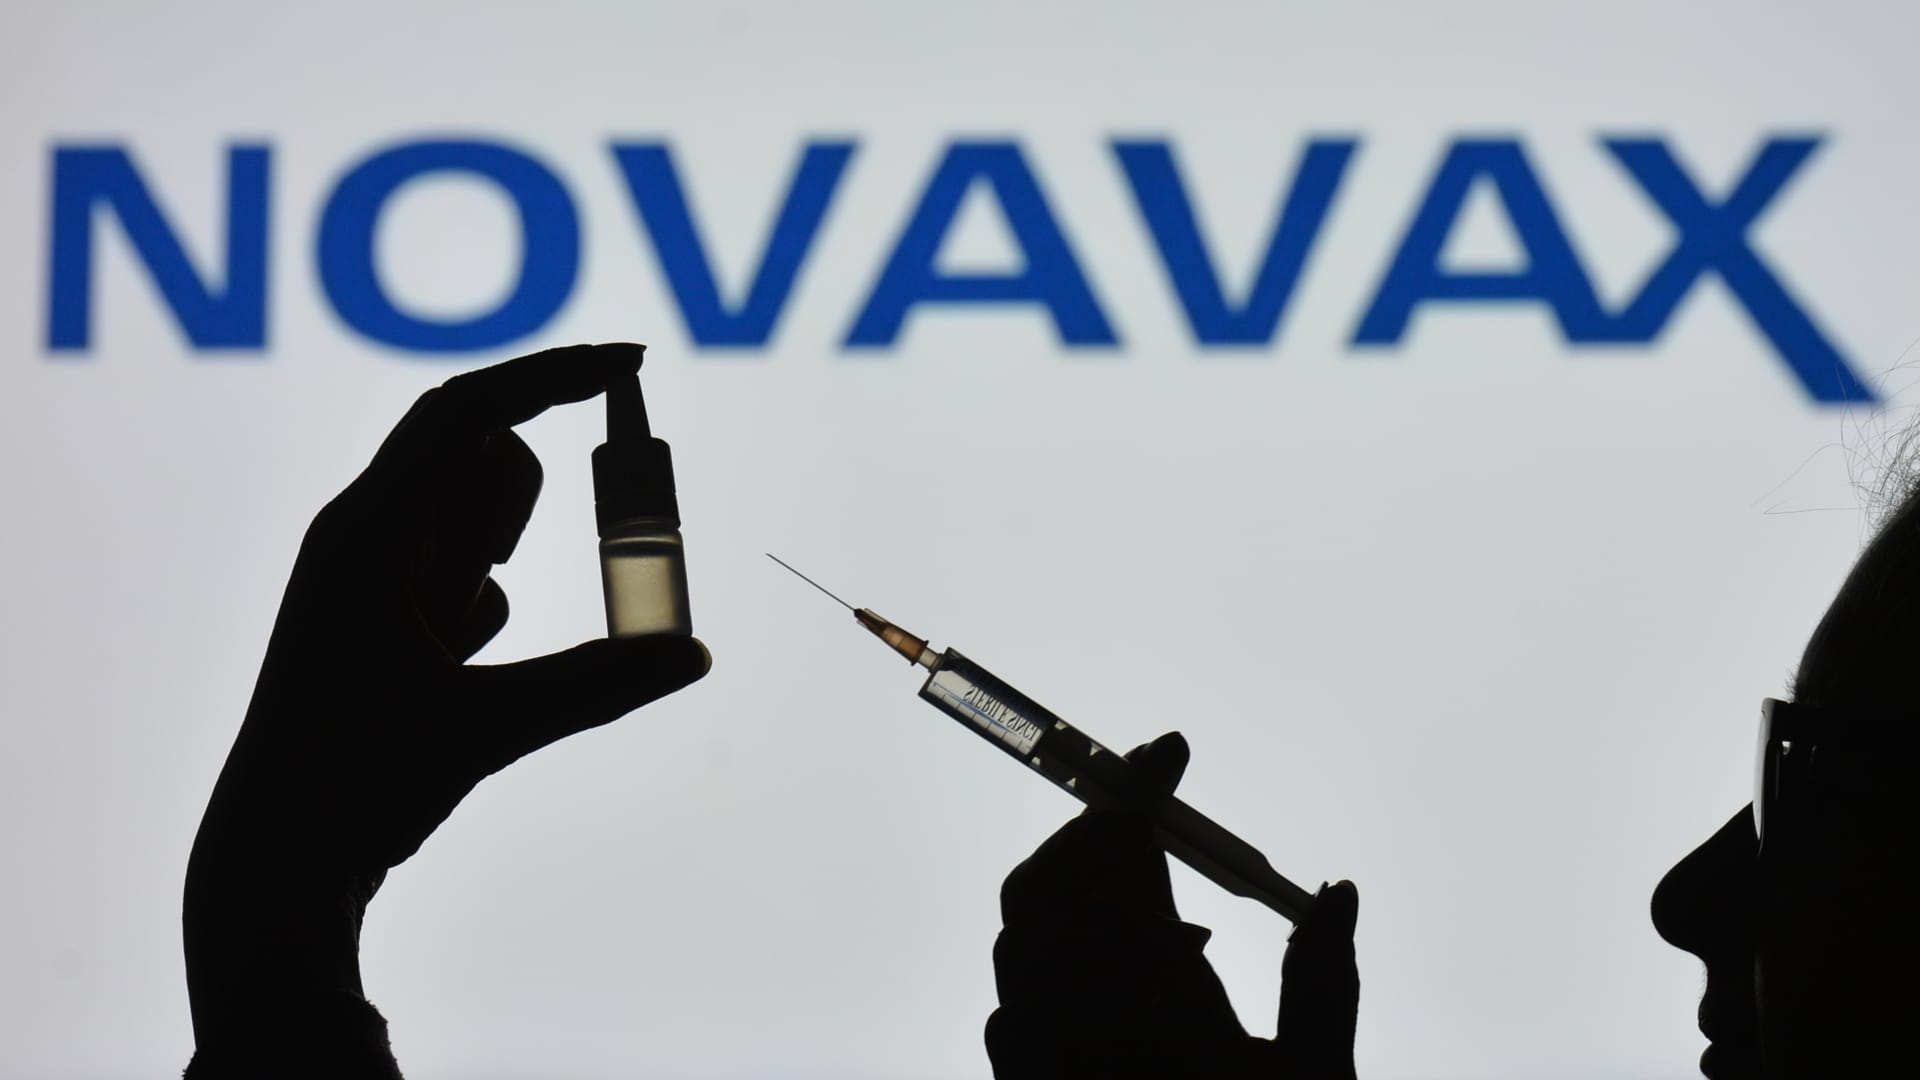 Novavax halves revenue guidance, stocks tank in extended trading